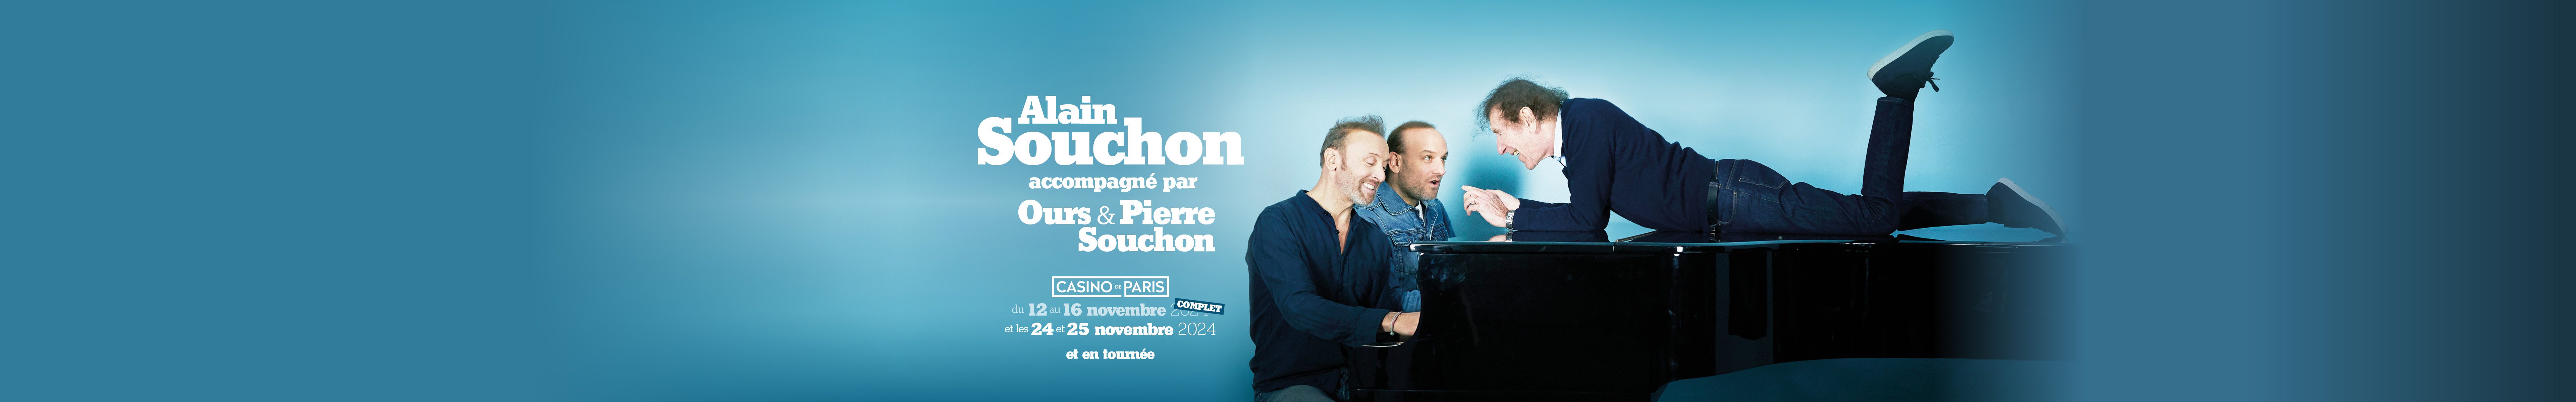 Alain Souchon accompagné de Ours et Pierre Souchon